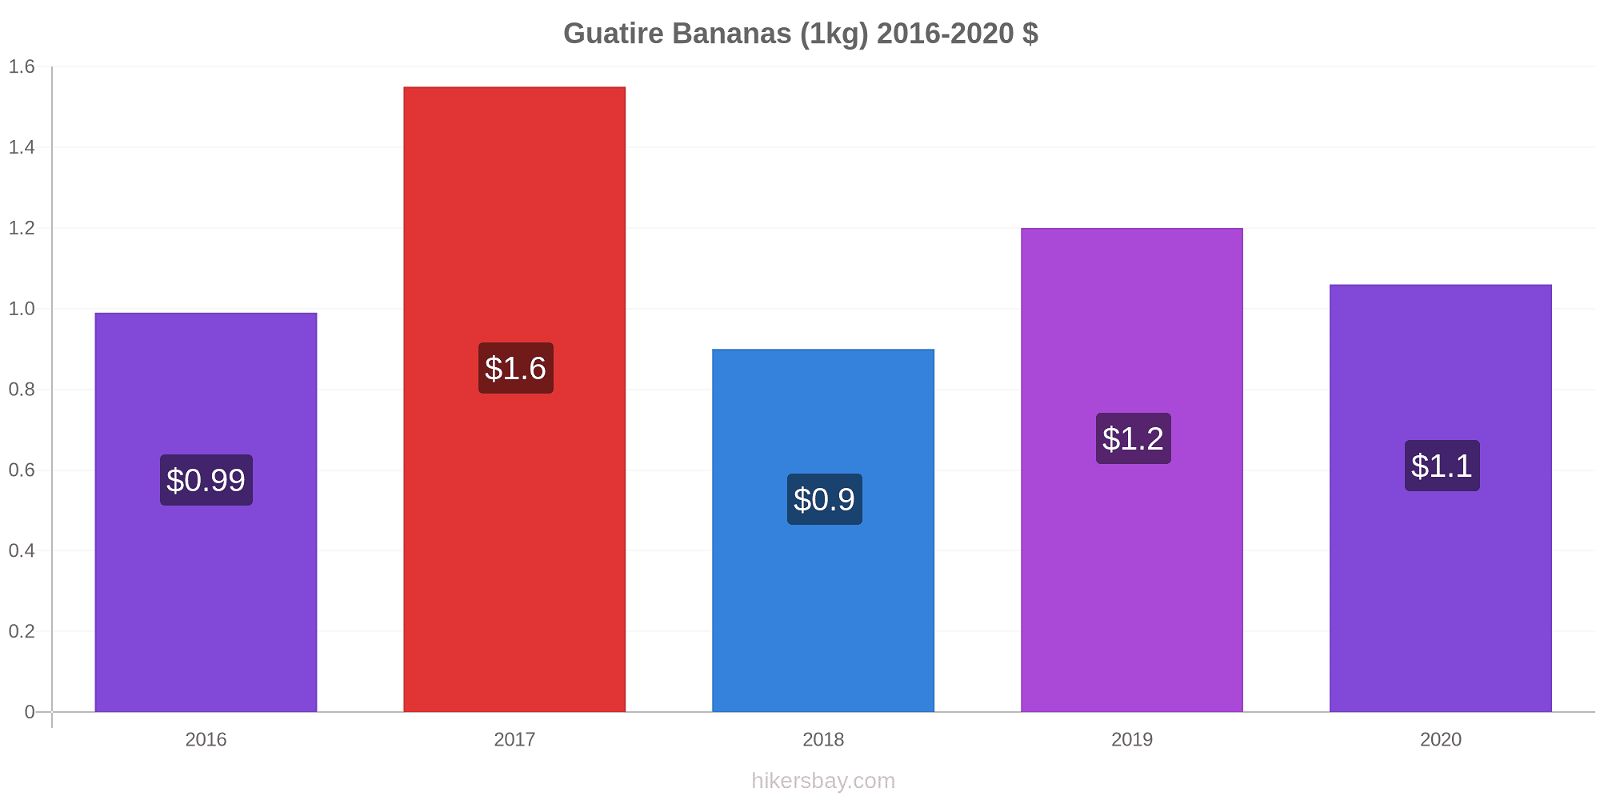 Guatire price changes Bananas (1kg) hikersbay.com